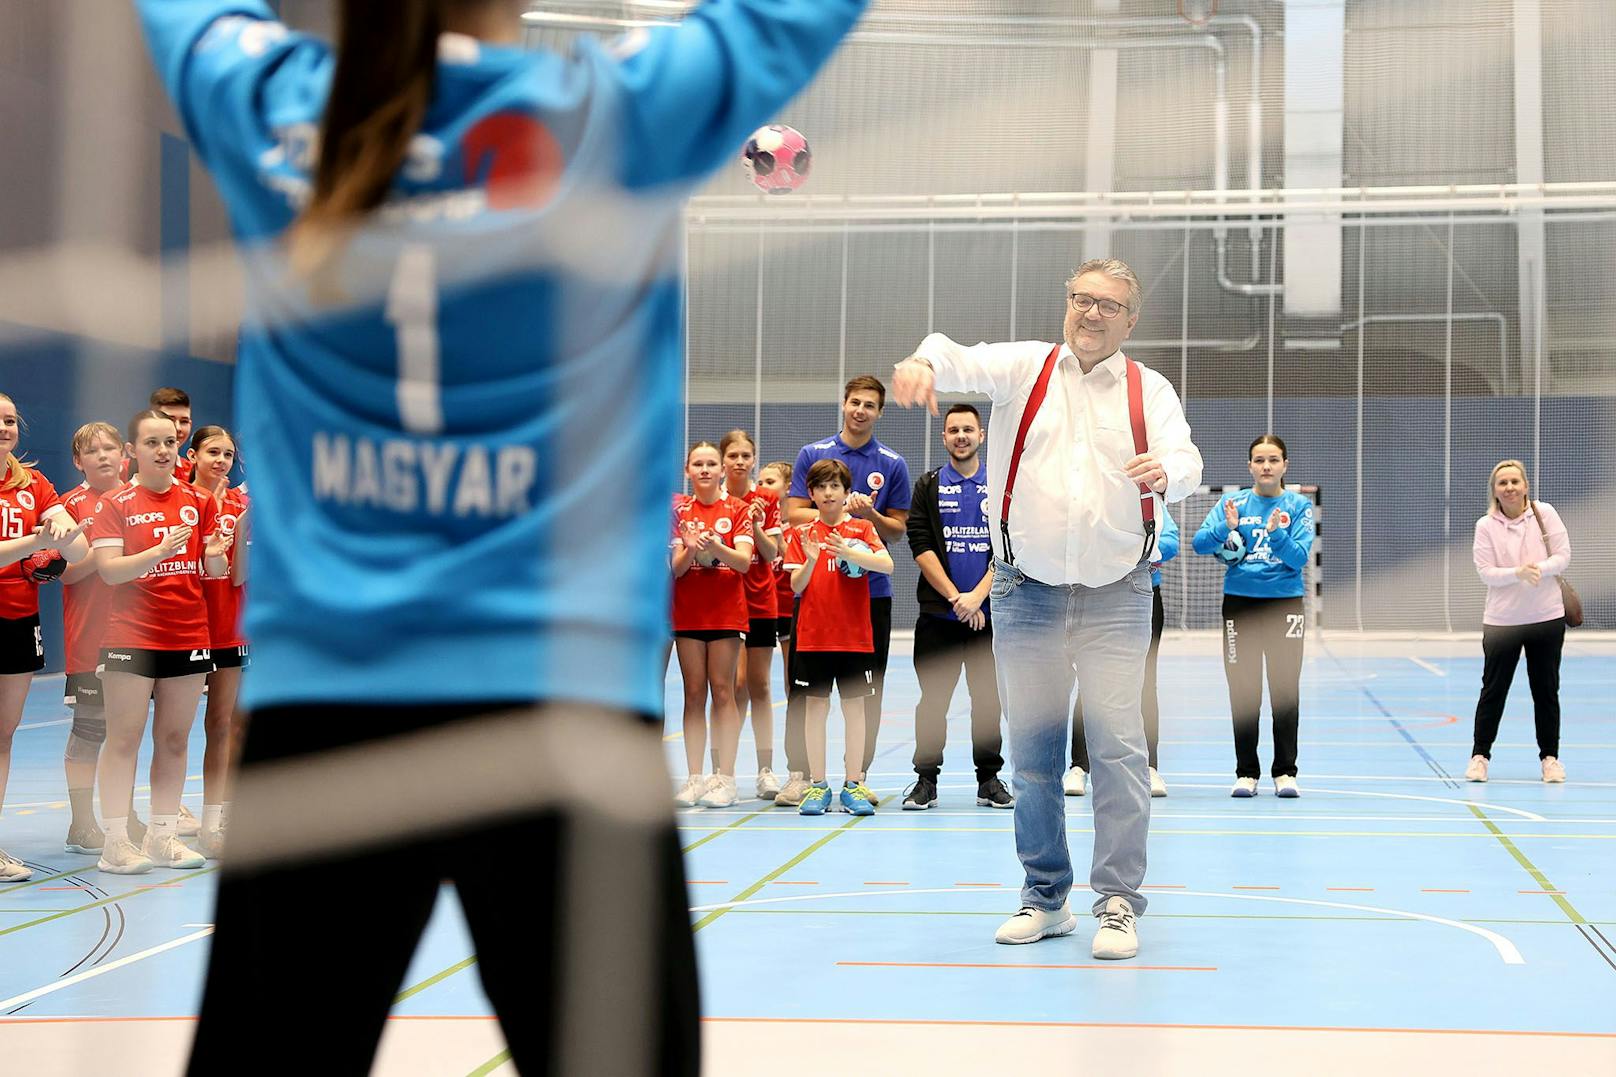 Peter Hacker auf dem neuen hochwertigen Sportbelag mit unterschiedlichen Linierungen von Handball bis Volleyball